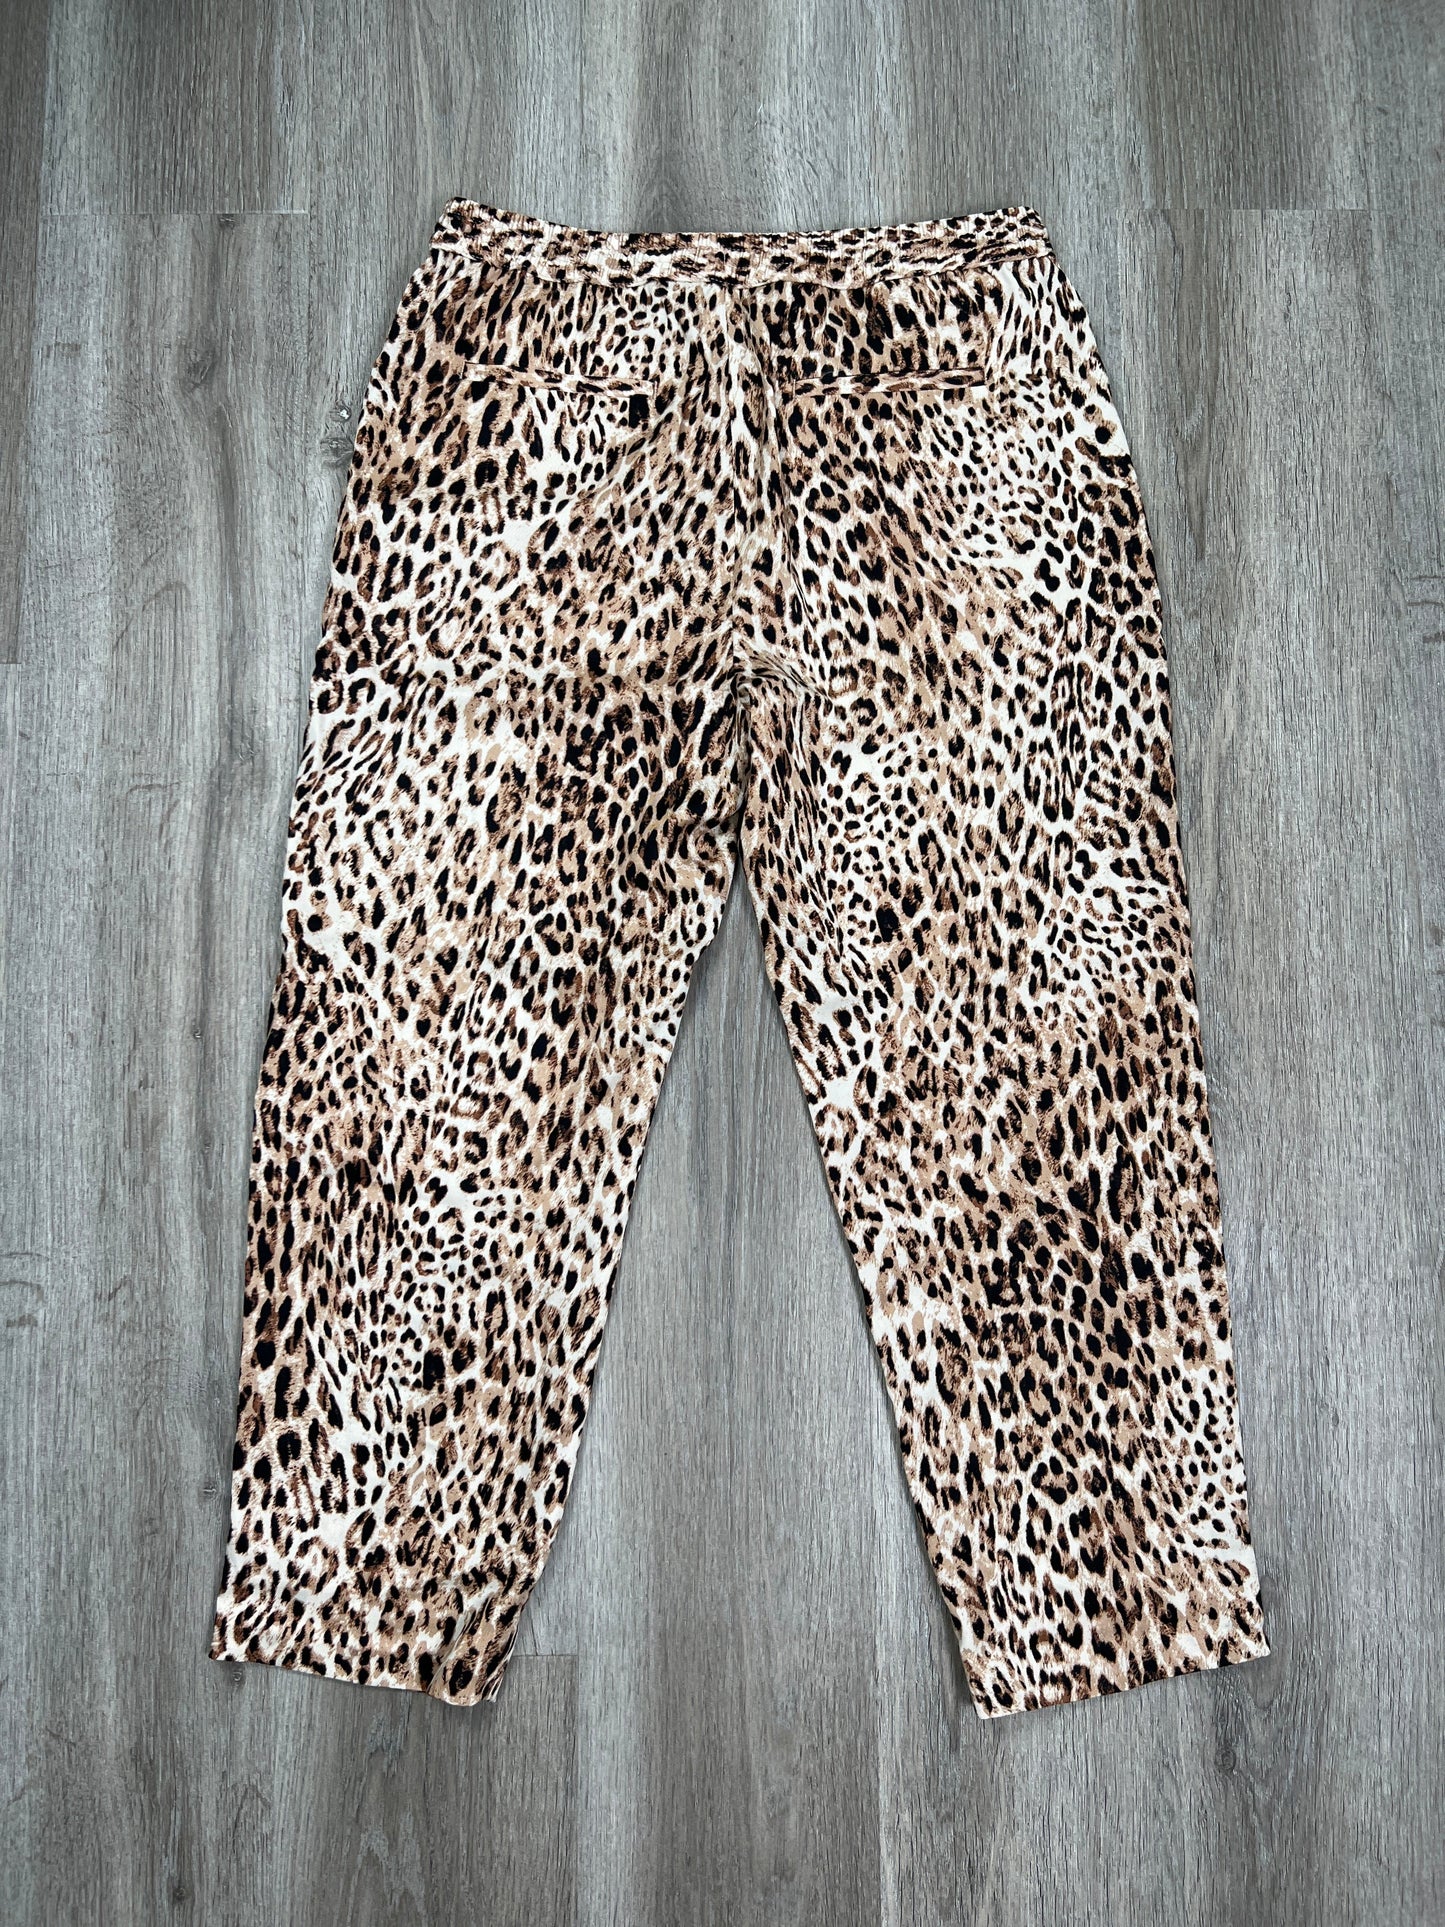 Leopard Print Pants Cropped Banana Republic, Size M